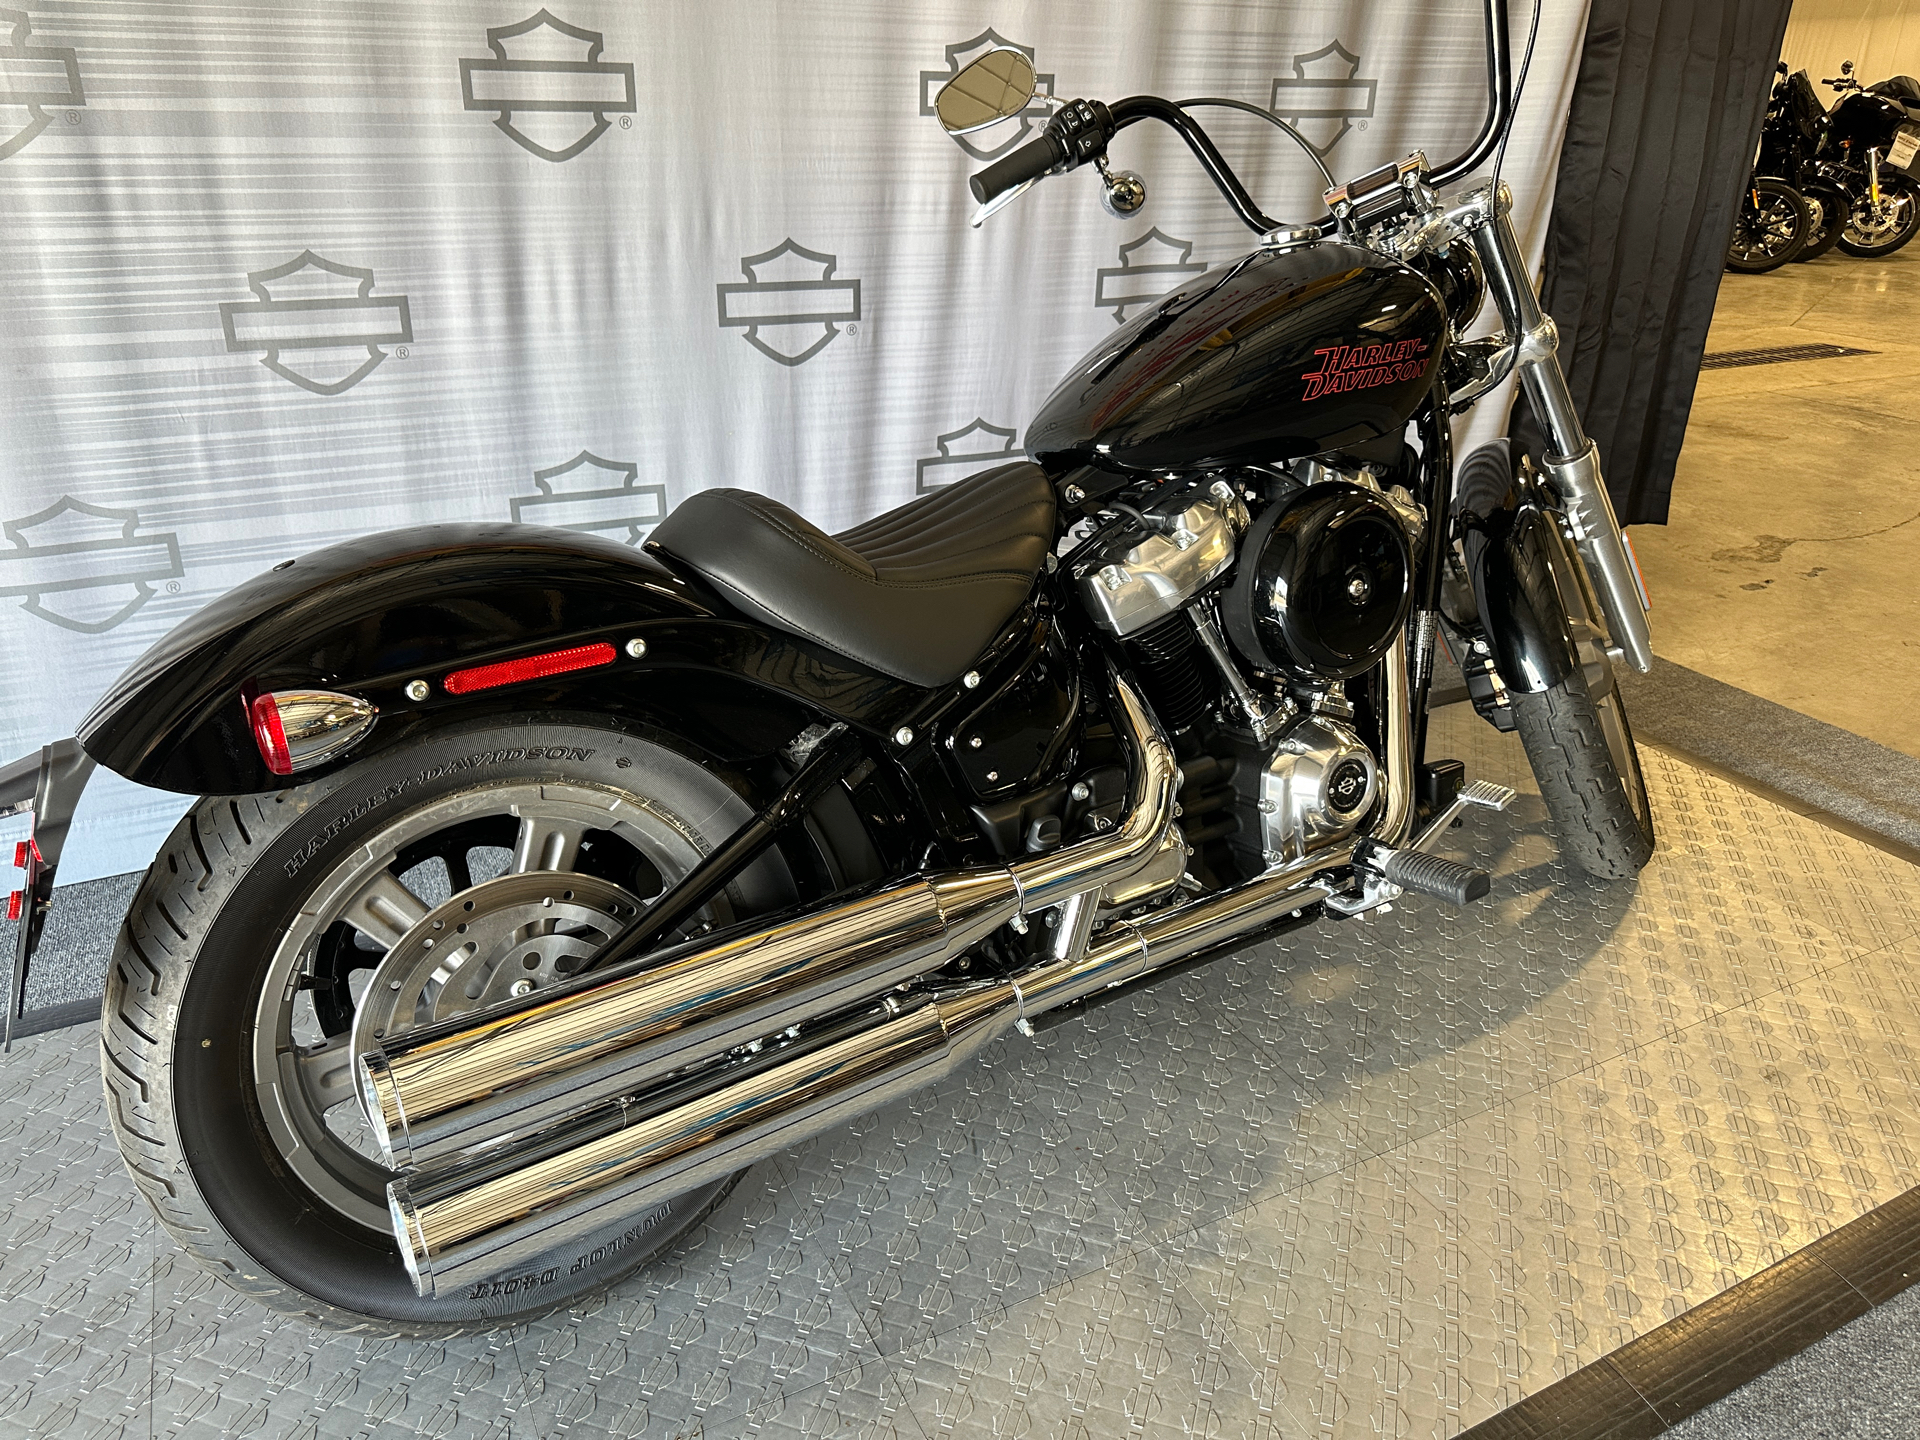 2023 Harley-Davidson Softail® Standard in Morgantown, West Virginia - Photo 5